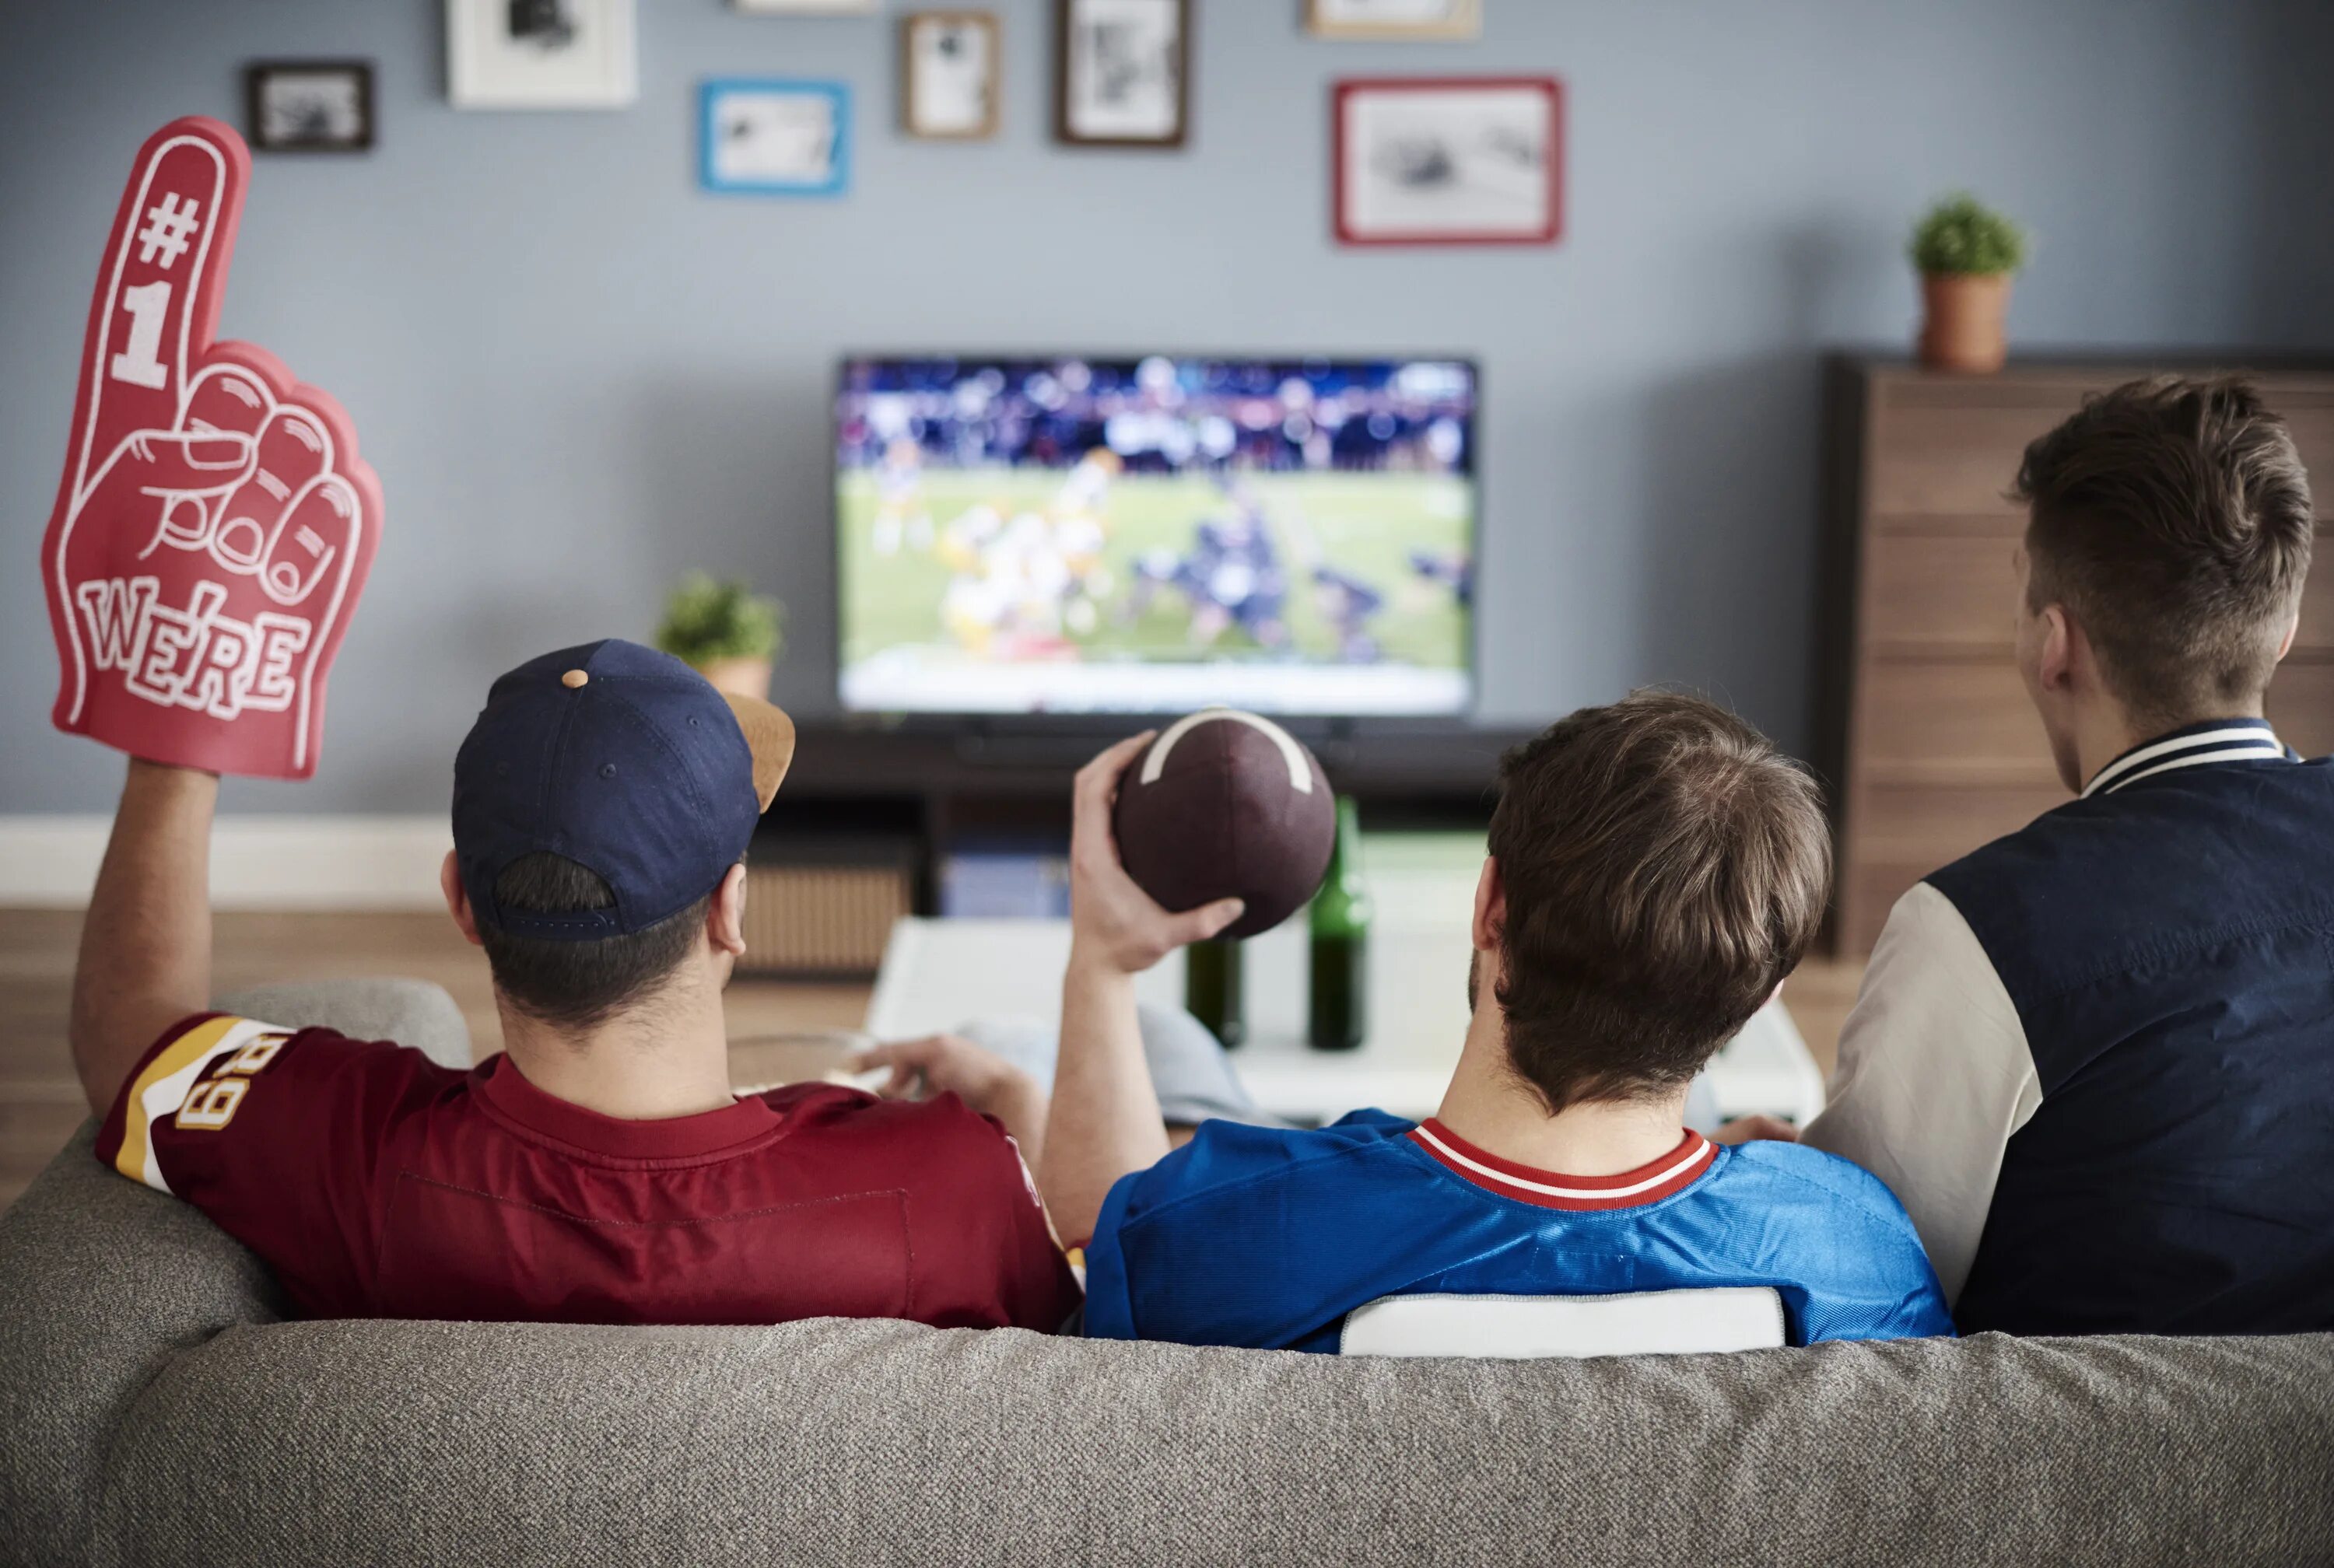 Sport do you watch on tv. Спорт по телевизору. Банки перед телевизором. Пикник перед телевизором. Мужчина смотрит матч по телевизору.